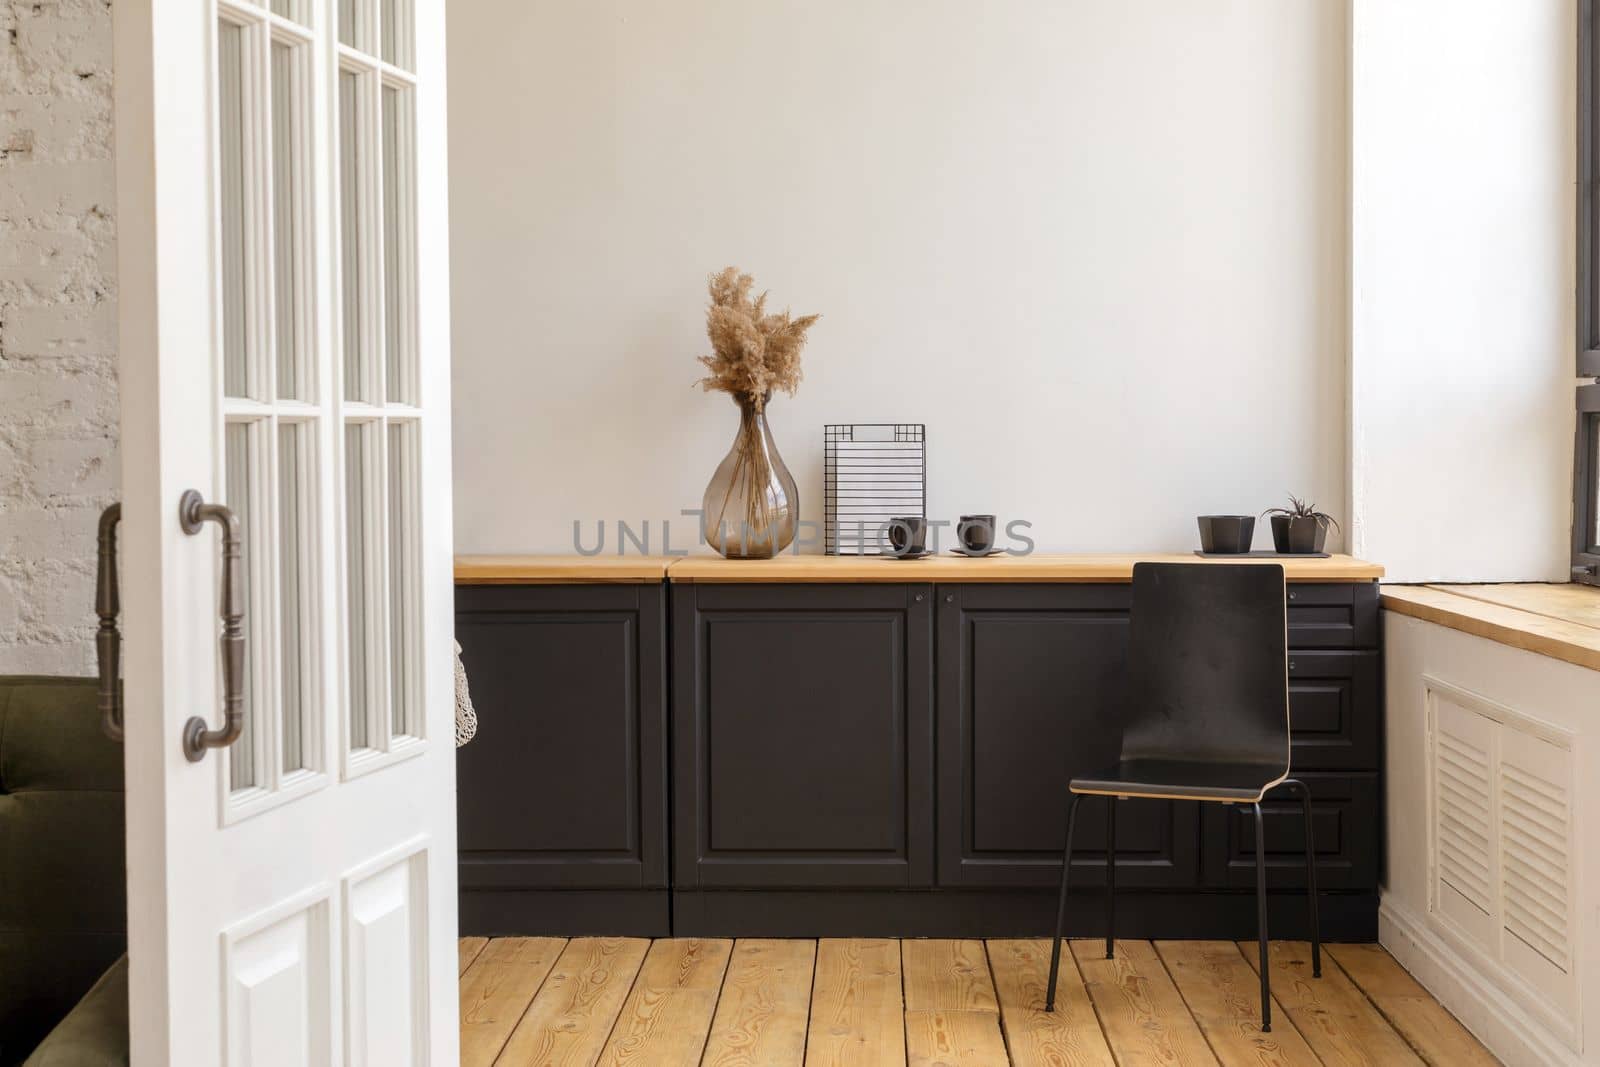 Interior of modern minimal kitchen in apartment by Demkat